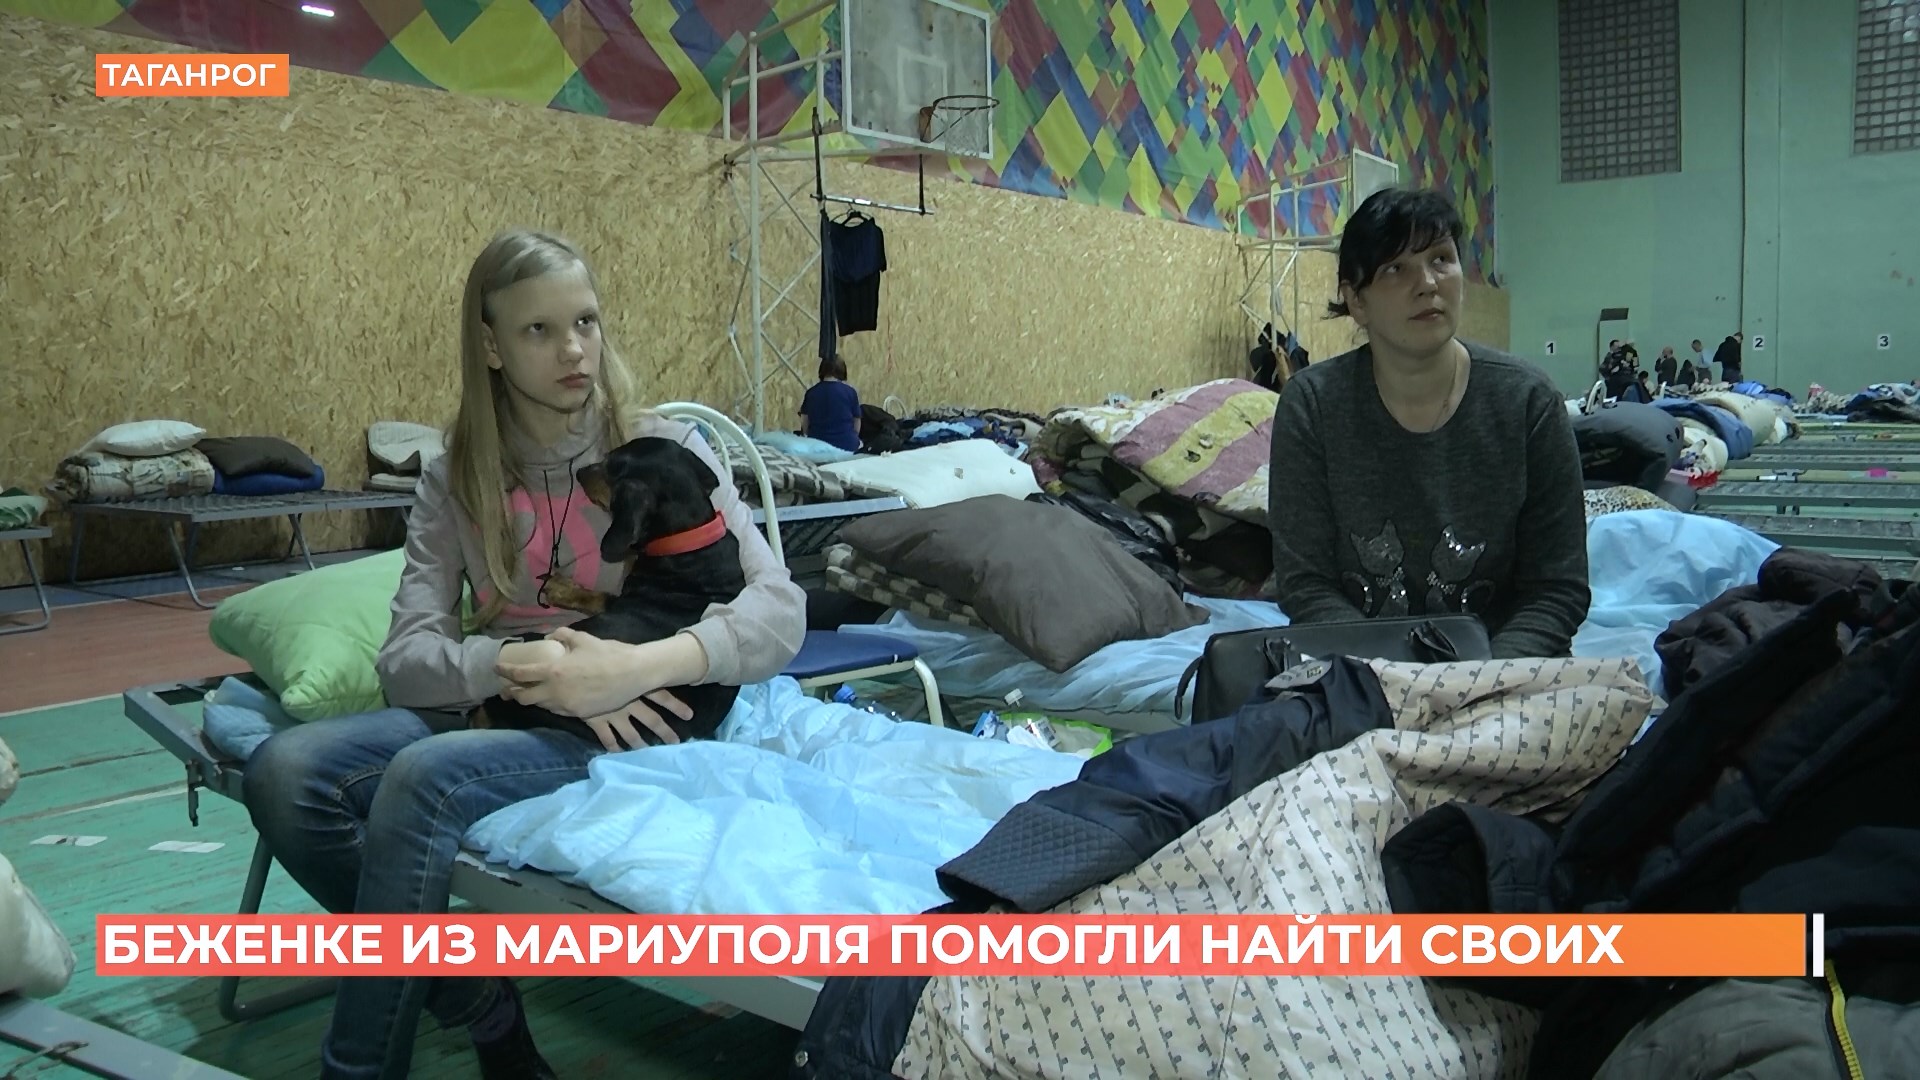 Беженка из Мариуполя благодаря обращению в сети нашла родственников в Ростове